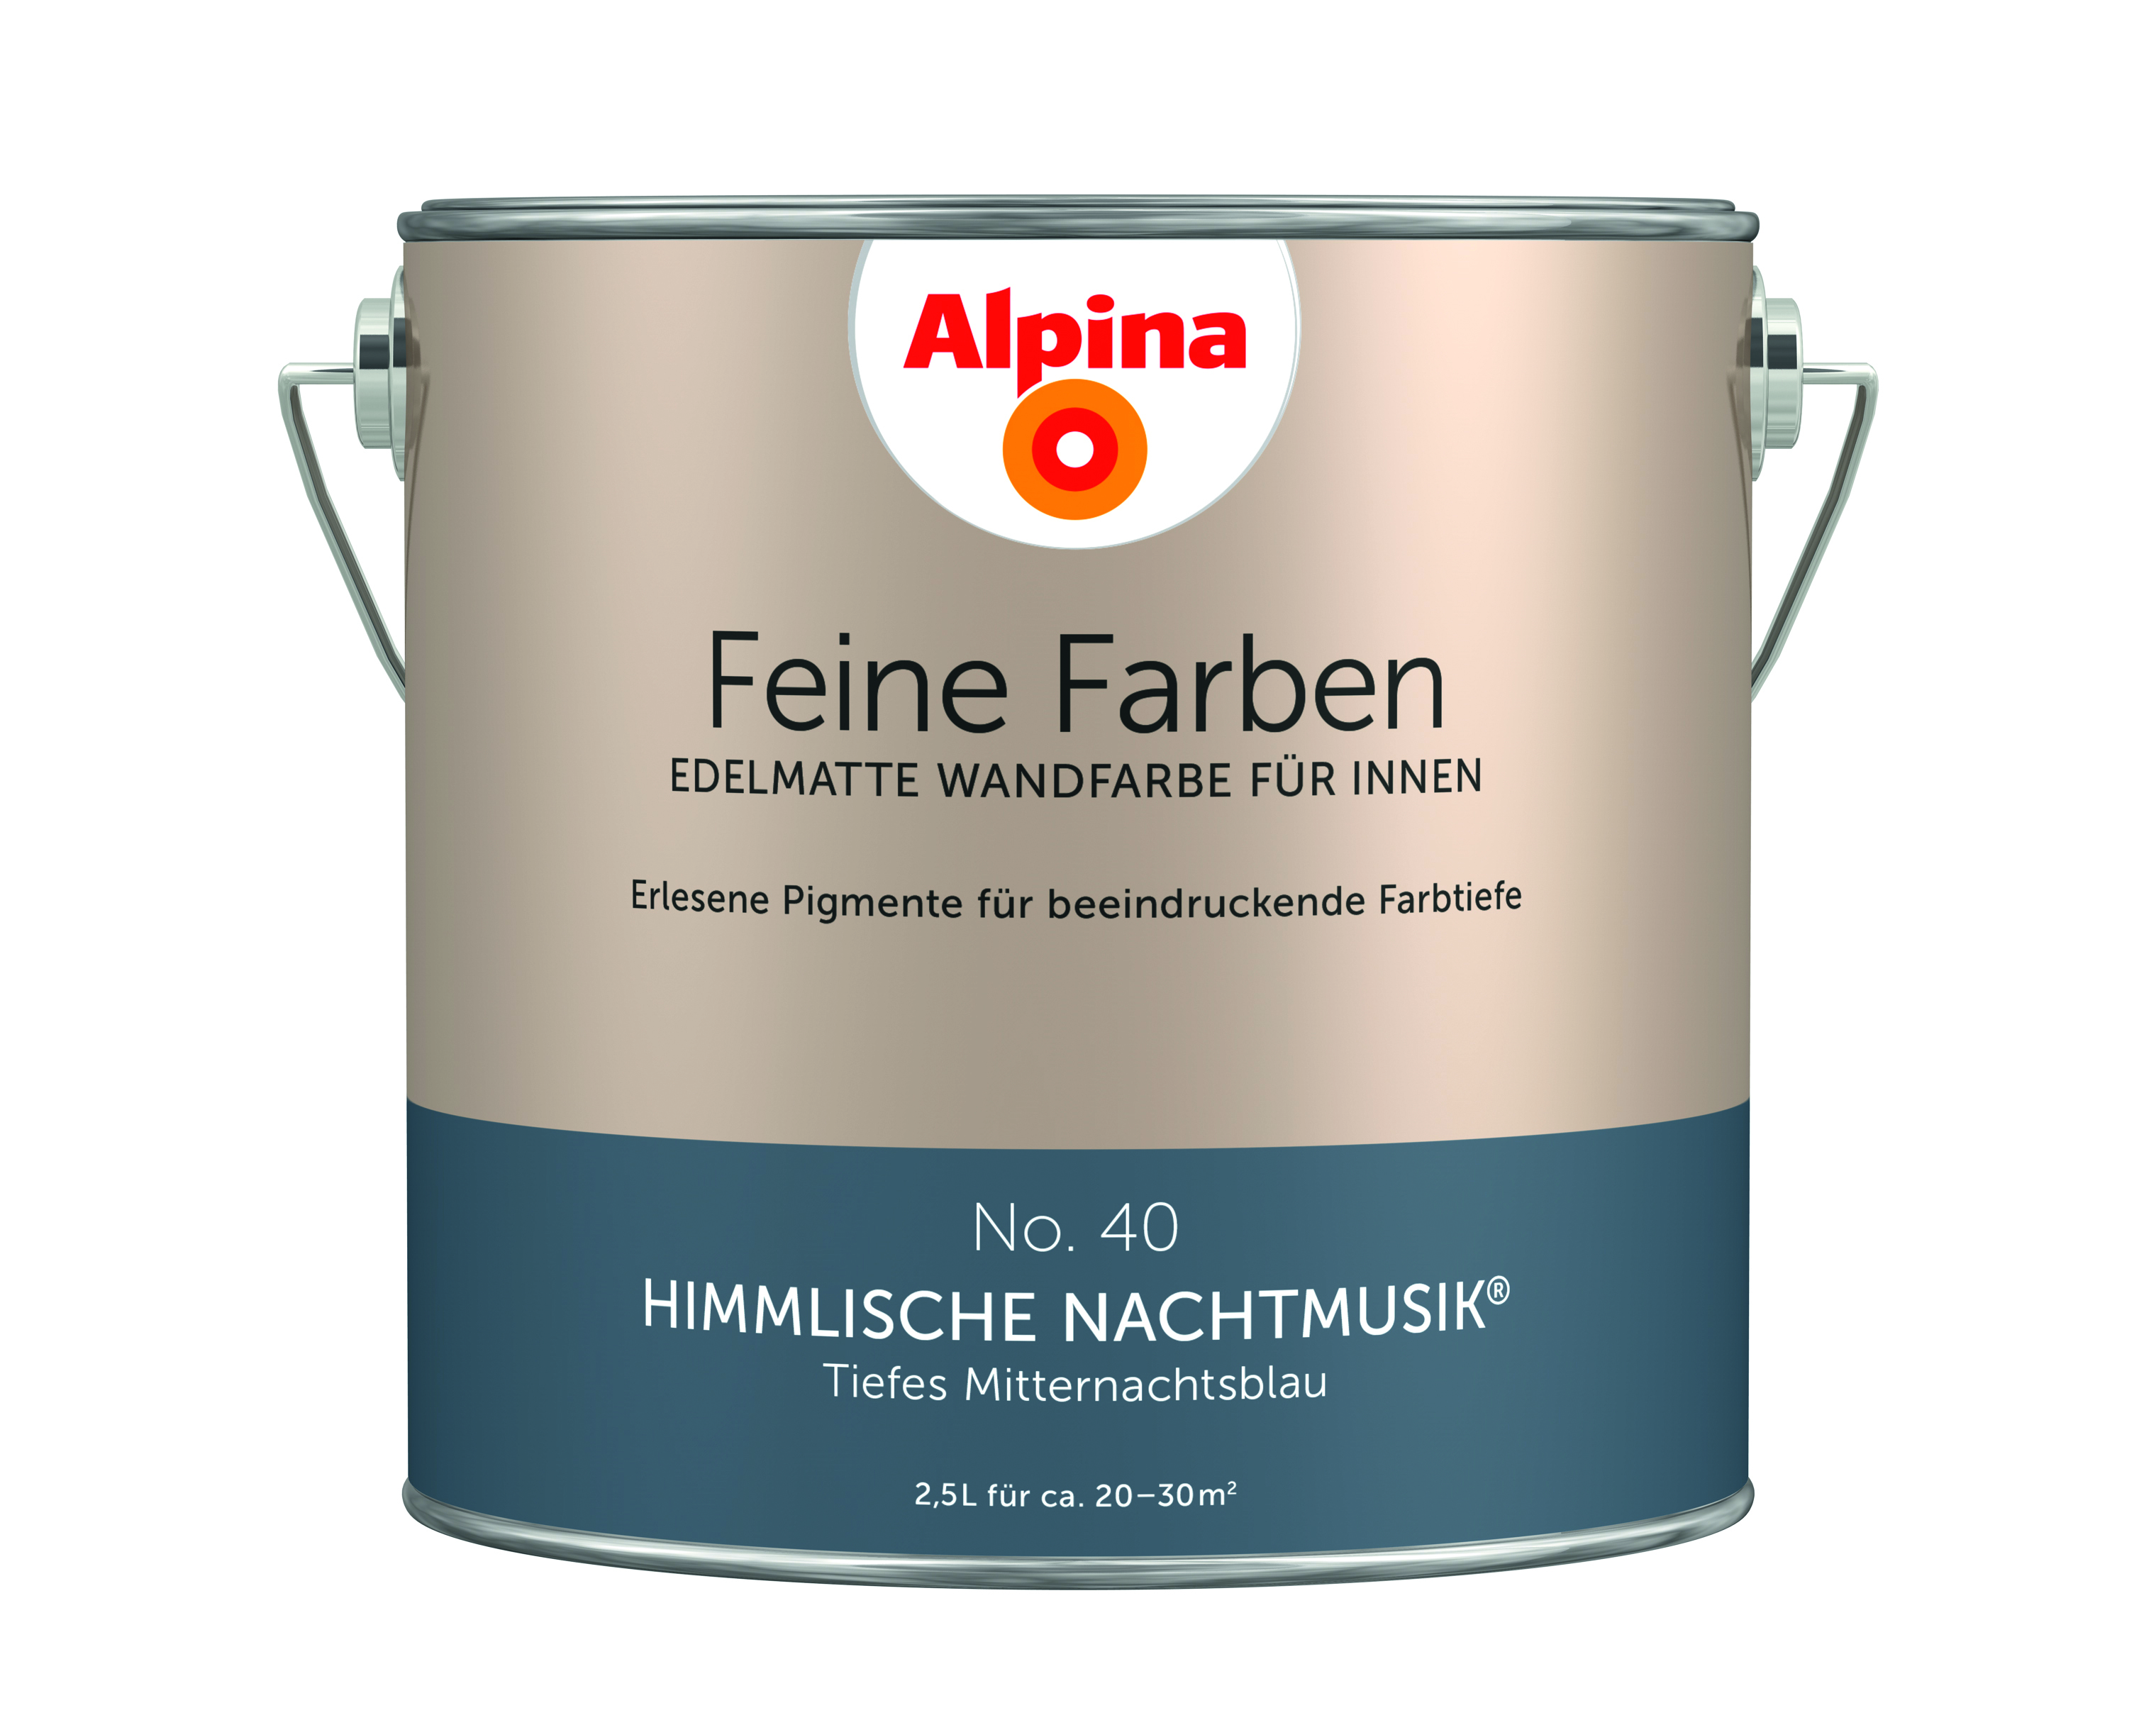 Alpina Feine Farben No. 40, Himmlische Nachtmusik